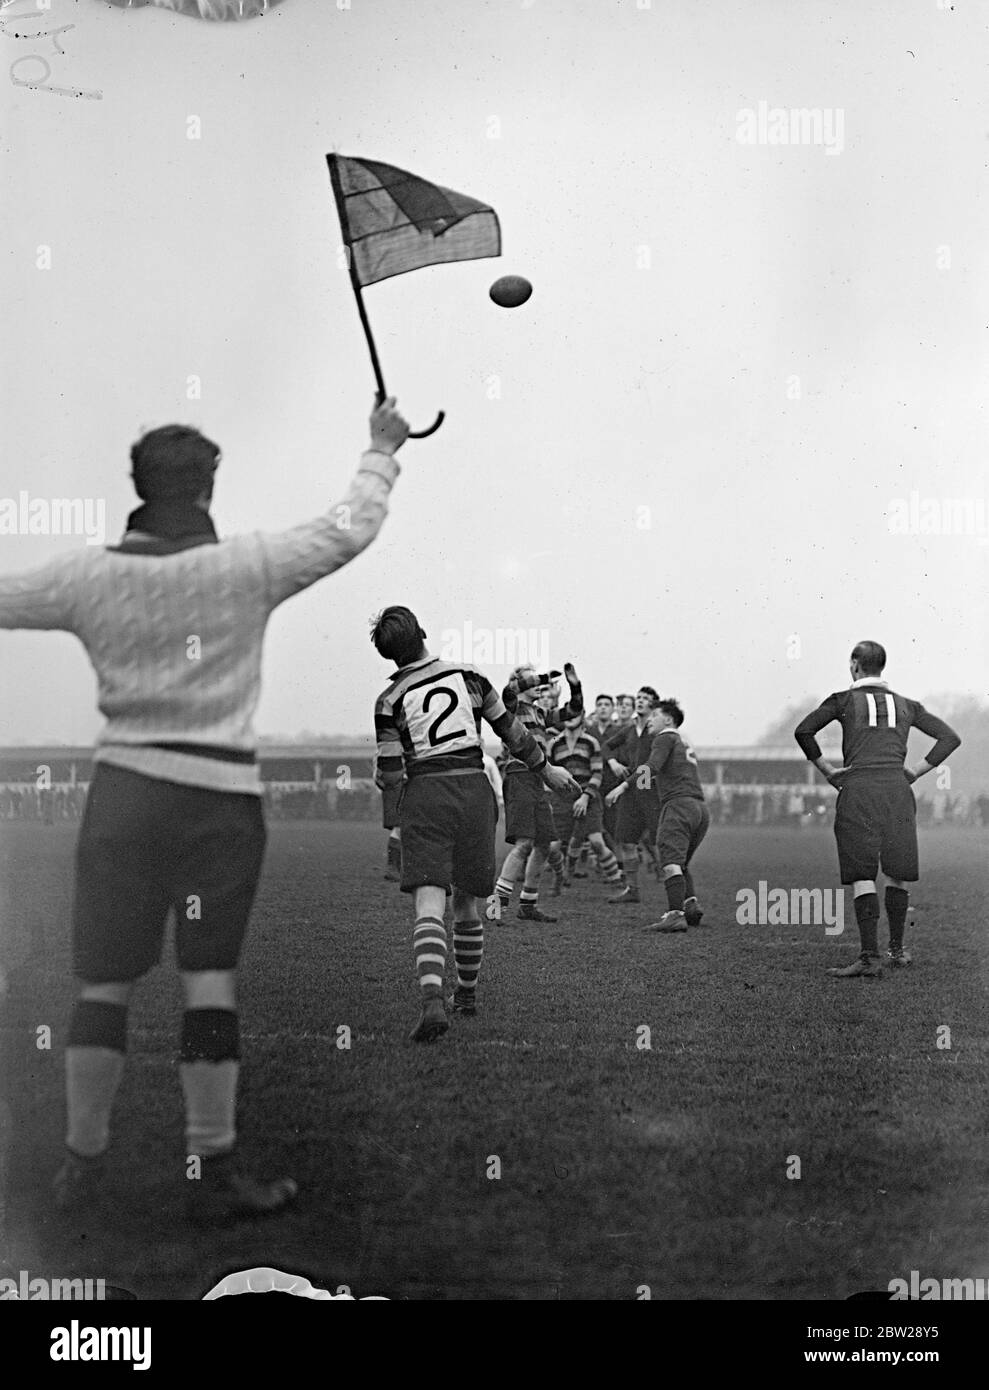 Inghilterra contro Scozia in scuole pubbliche partita di rugby. I ragazzi delle scuole pubbliche inglesi incontrarono la Scozia in una partita di rugby al Richmond Athletic Ground, Richmond, Surrey Photo Shows, S D Pearce (Inghilterra) che gettò la palla dal tocco per una partita. 31 dicembre 1937 Foto Stock